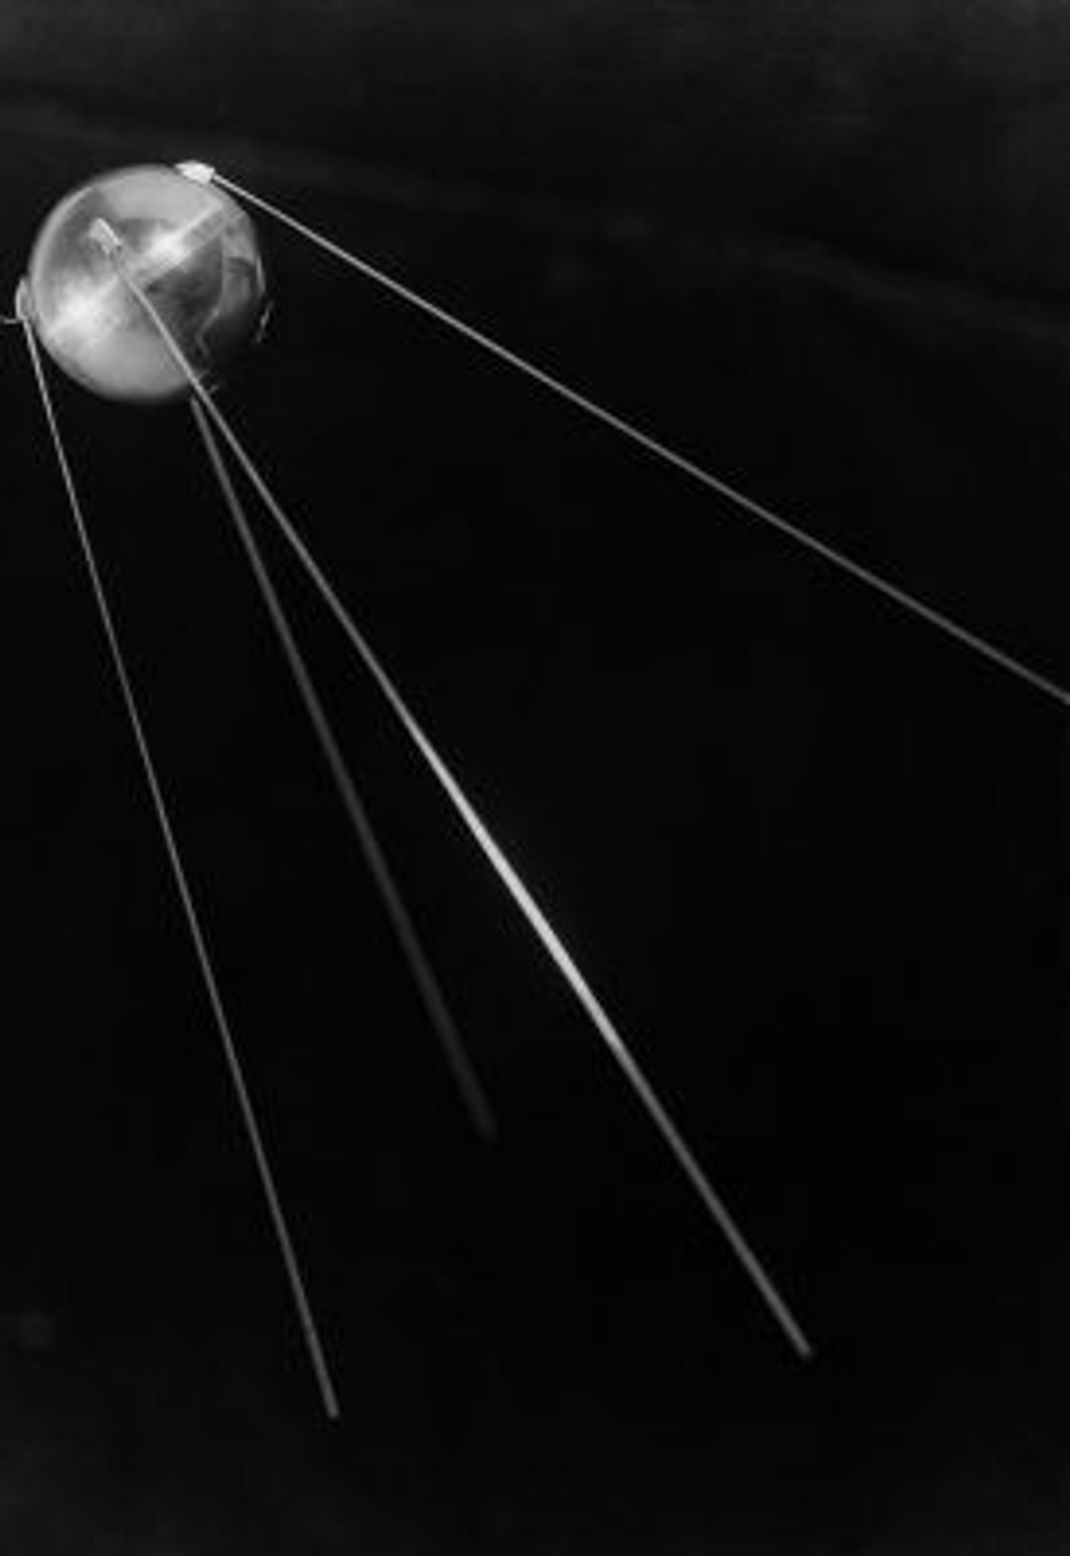 Sputnik 1 war ein erster Erfolg für die Sowjetunion im Wettrennen ums Weltall. Der erste künstliche Erdsatellit wurde am 4. Oktober 1957 gestartet. 92 Tage später verglühte er beim Wiedereintritt in die Erdatmosphäre am 4. Januar 1958.